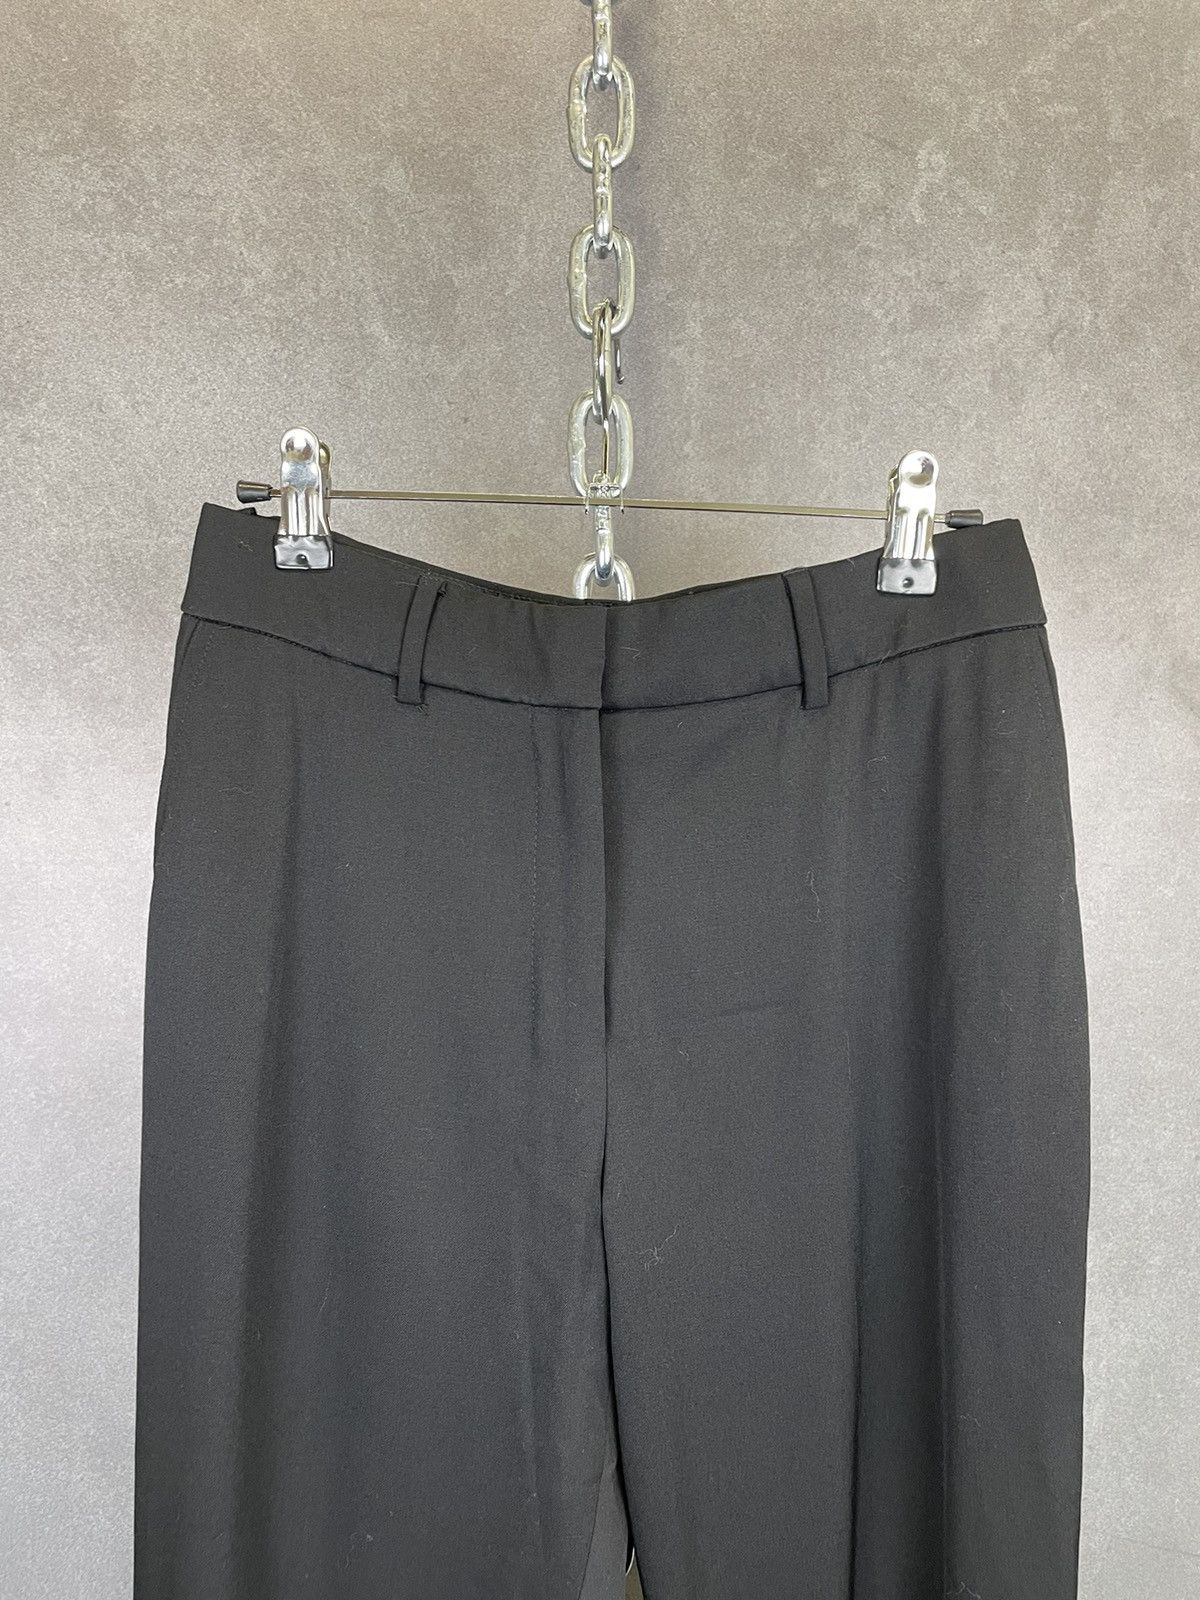 Yves Saint Laurent Vintage Yves Saint Laurent Black Wool Trousers Size 28”x30” Size 28" / US 6 / IT 42 - 2 Preview